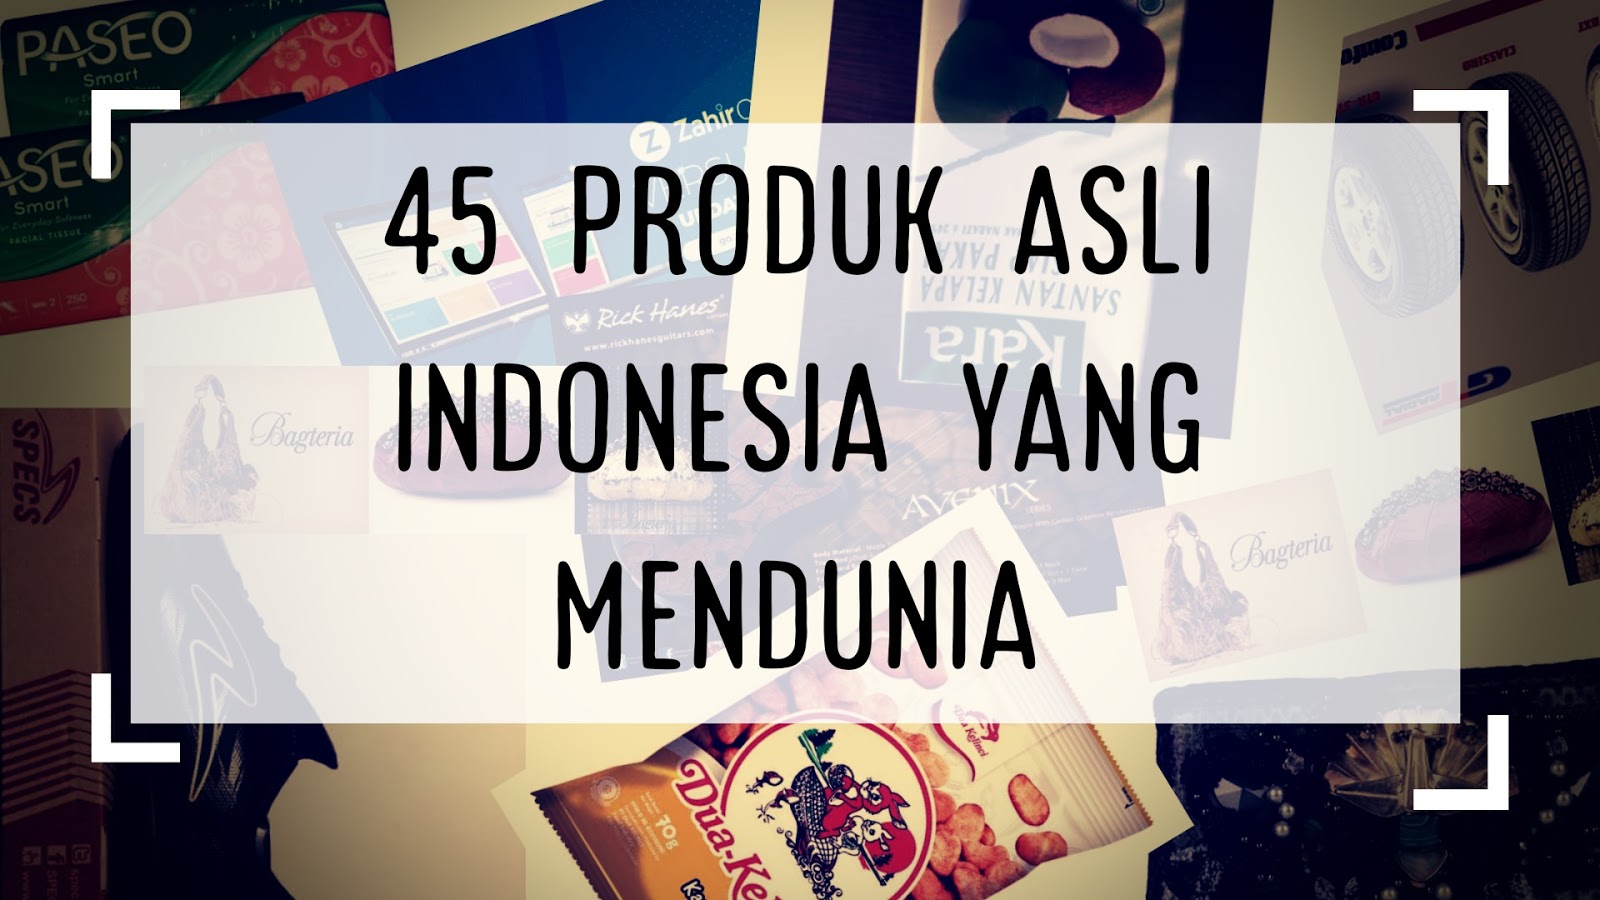 45-produk-asli-indonesia-yang-mendunia-dan-go-internasional-emang-bikin-bangga